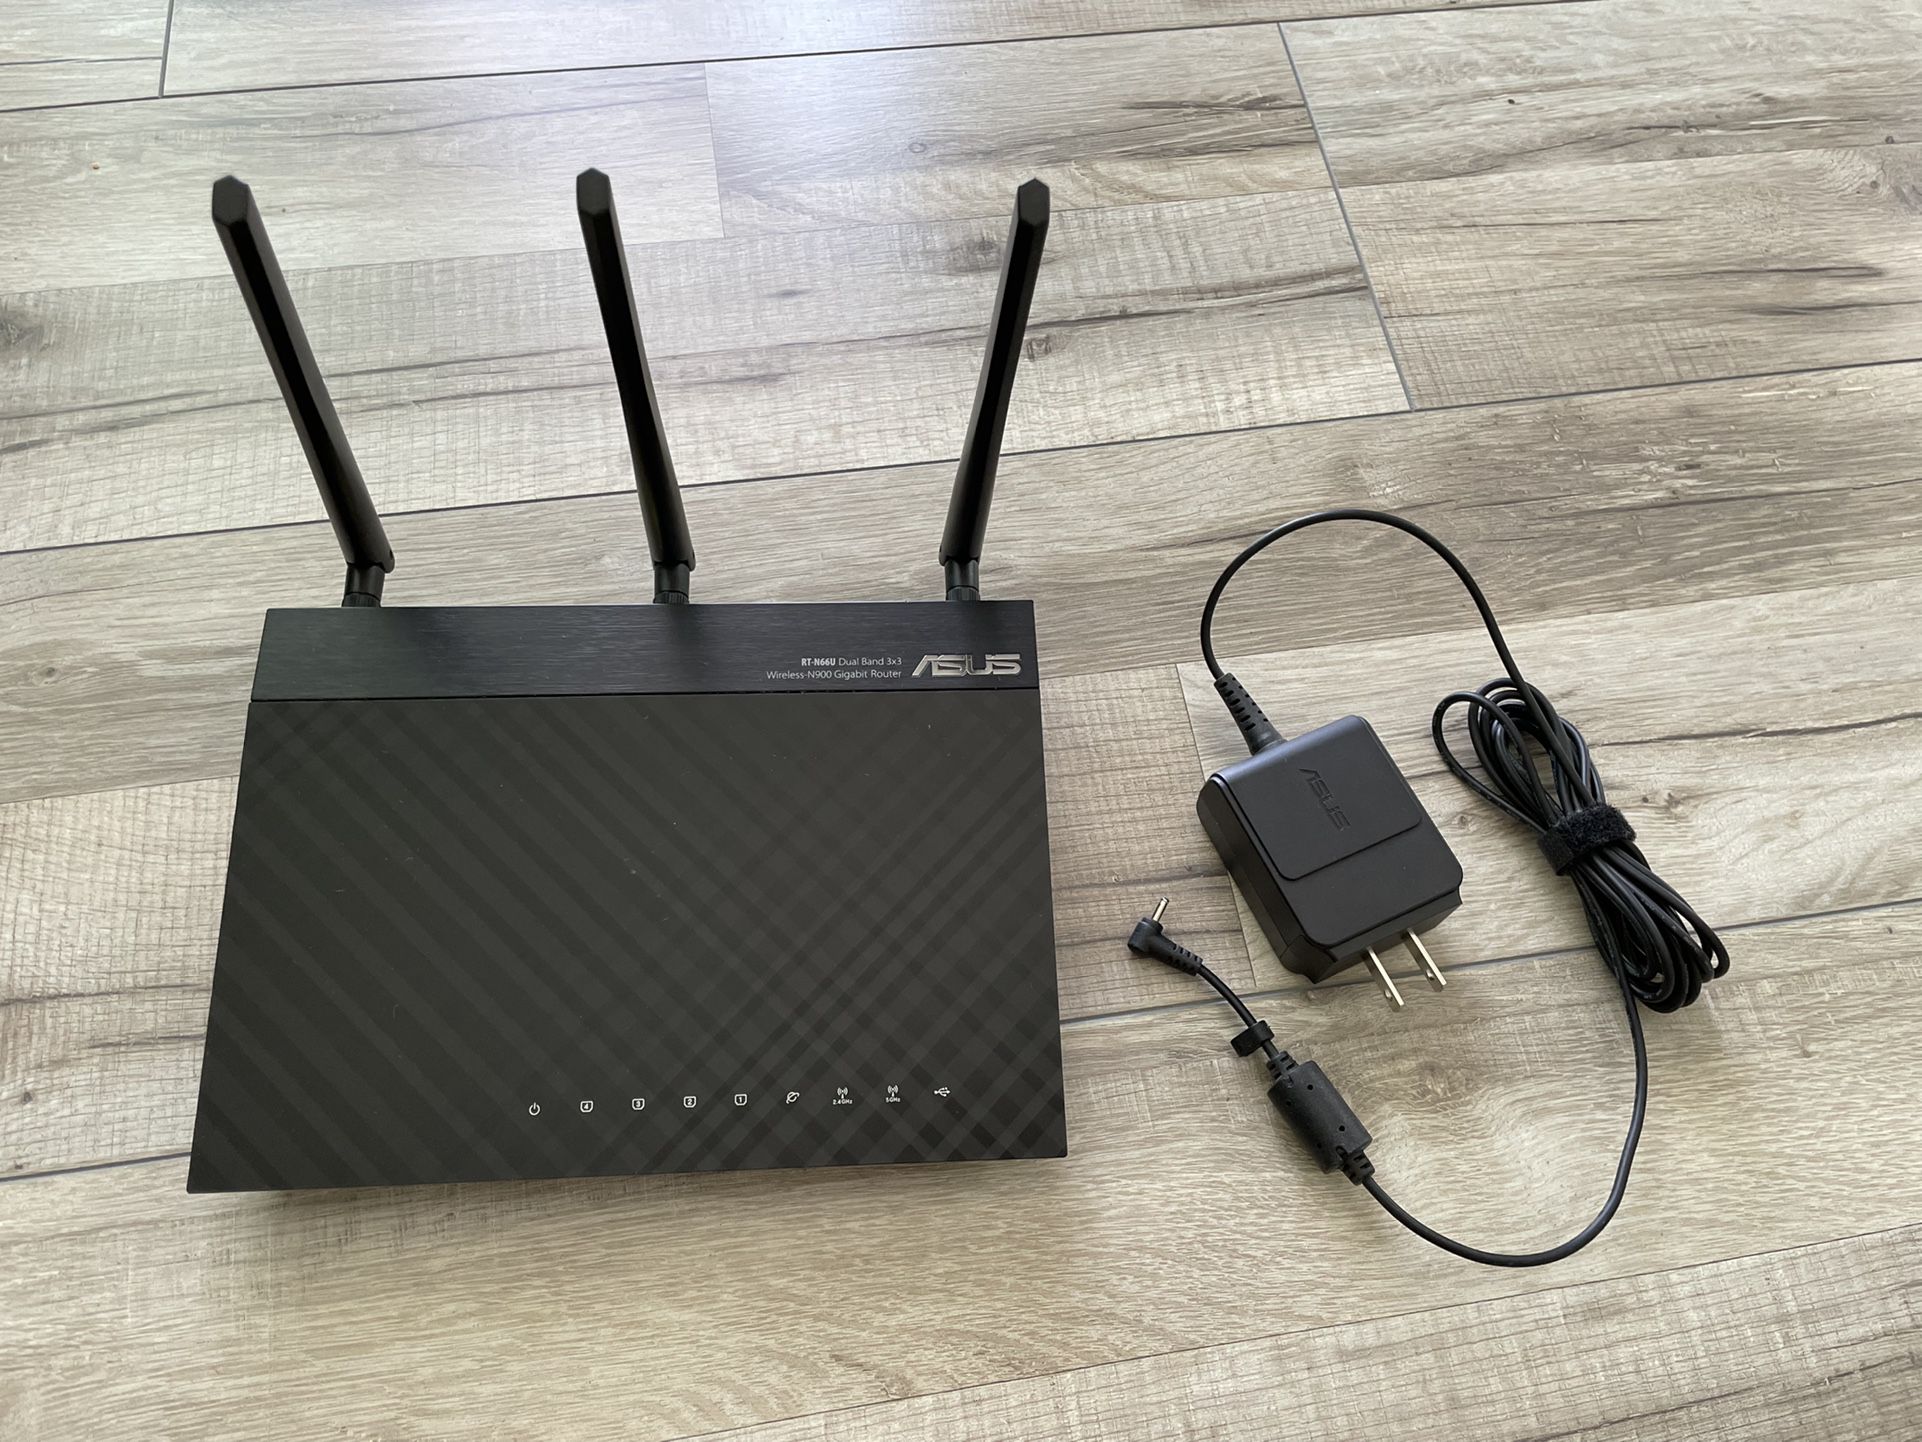 ASUS RT-N66U WiFi Router 